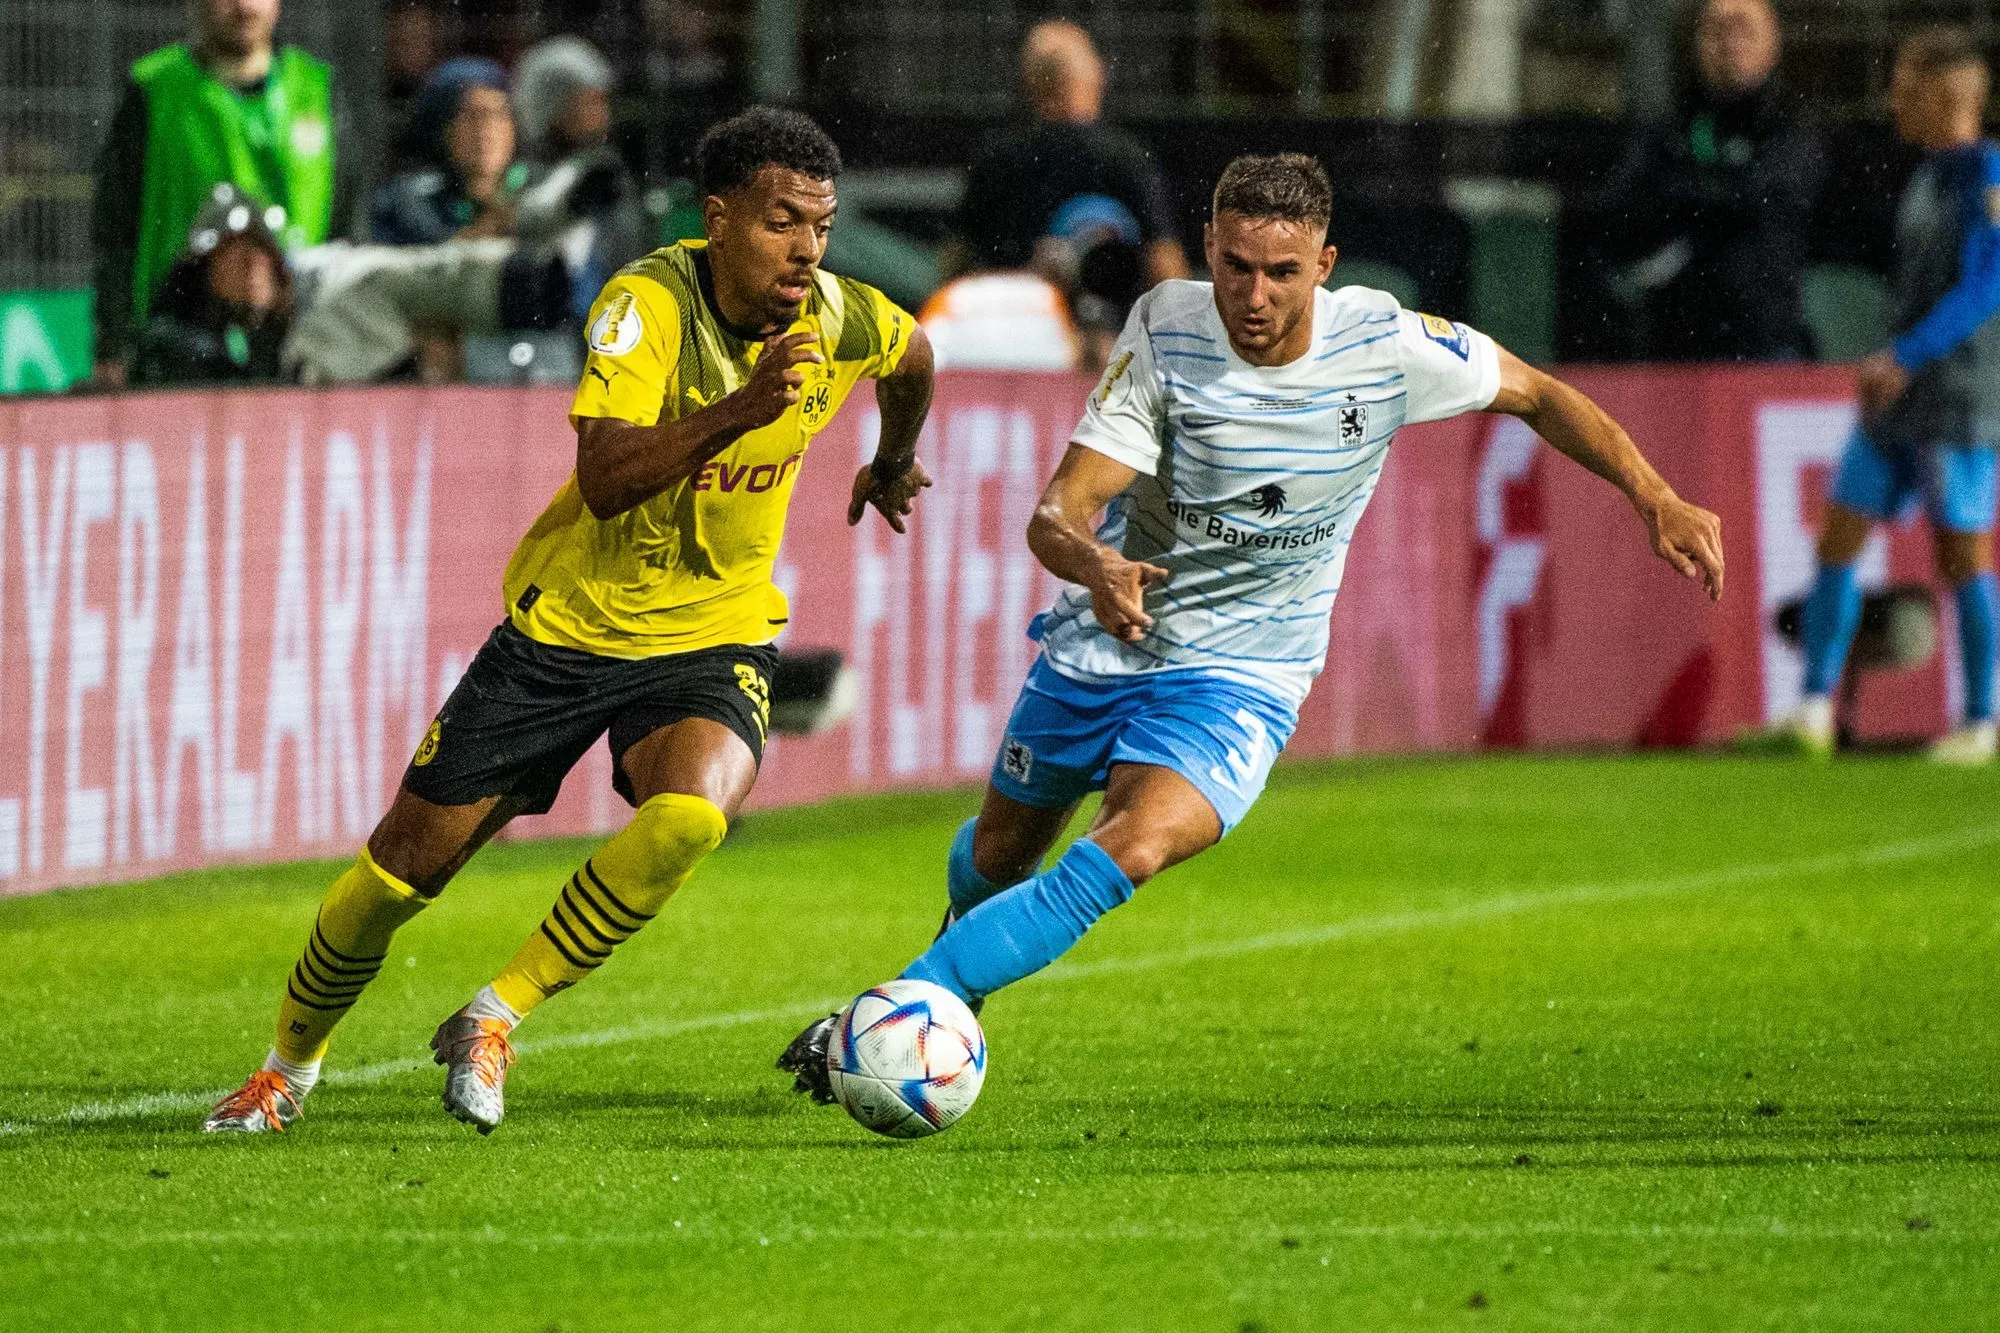 Dortmund et Stuttgart ouvrent leur saison par une victoire en Coupe d'Allemagne